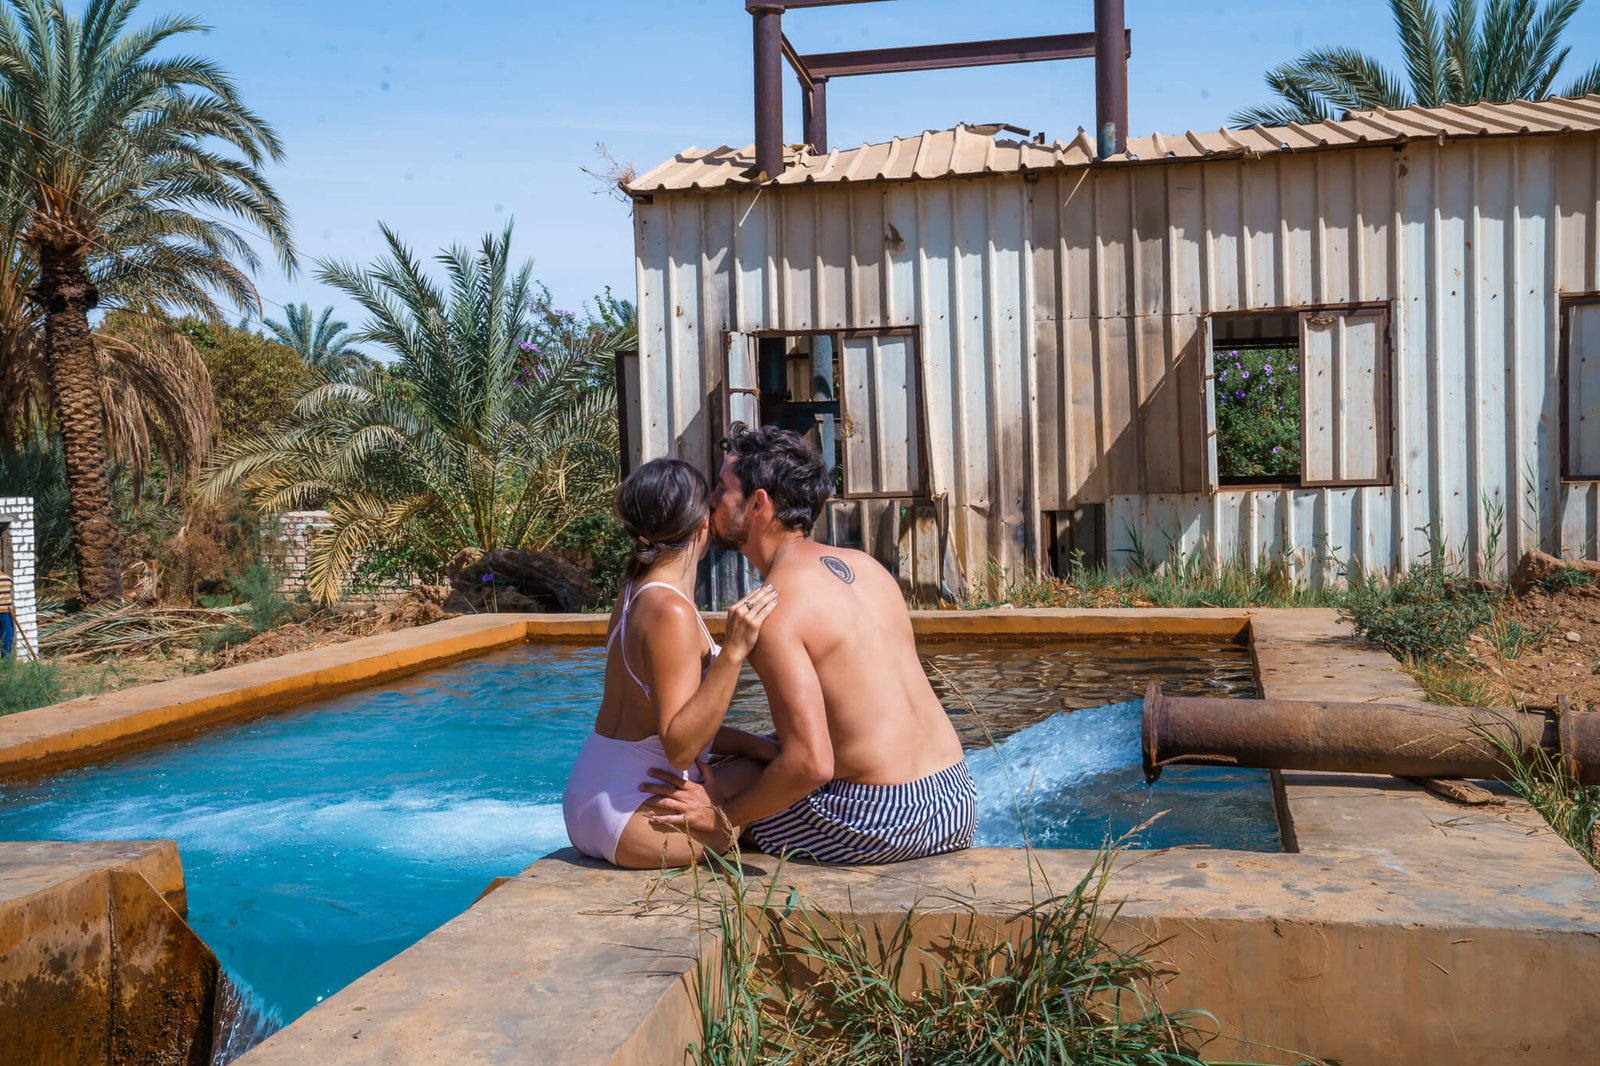 Hot spring at the Bahariya Oasis